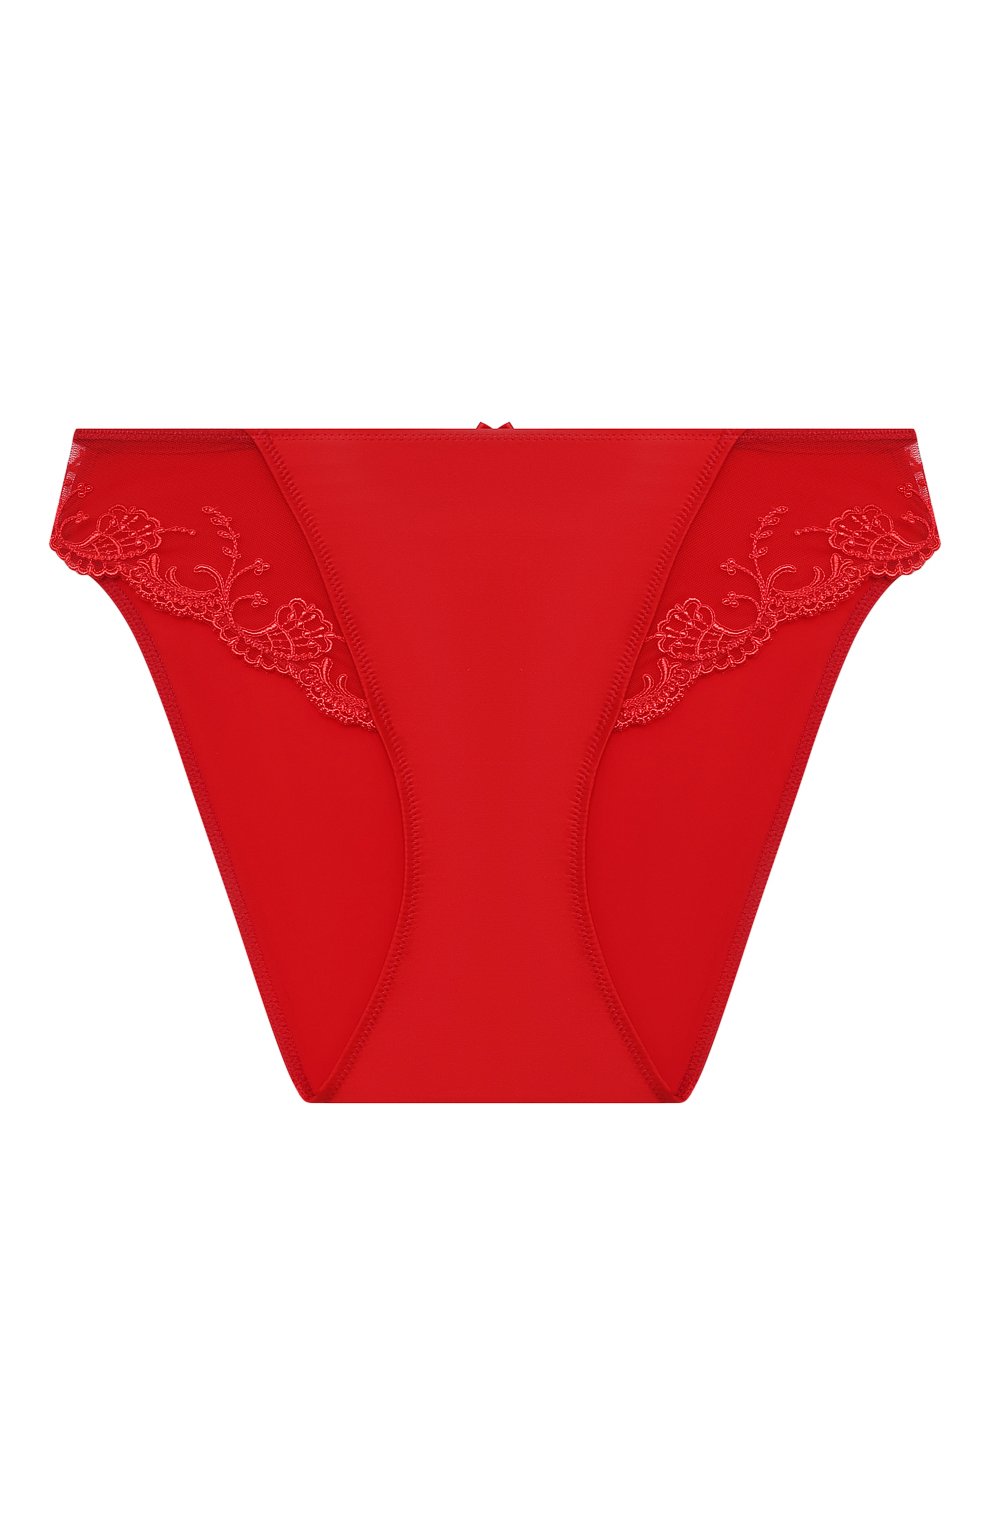 Женские красные трусы-слипы LISE CHARMEL купить в интернет-магазине ЦУМ,  арт. ACC0280